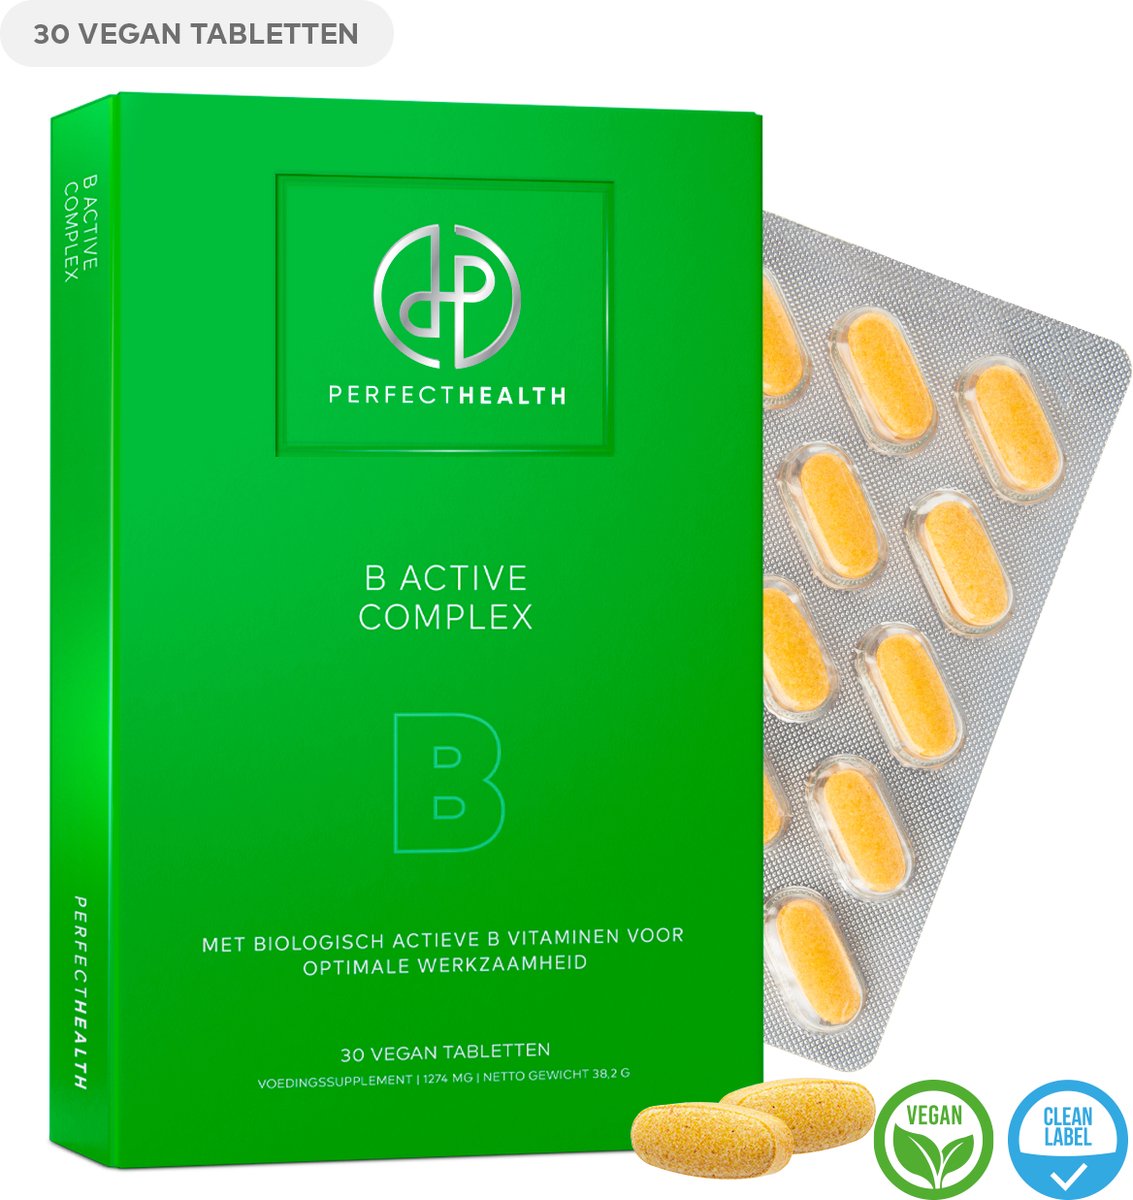 Perfect Health - B Active Complex - Voor de energiehuishouding, zenuwstelsel en immuunsysteem - Vitamine B1, B6, B12 en Biotine - 30 tabletten - Vegan